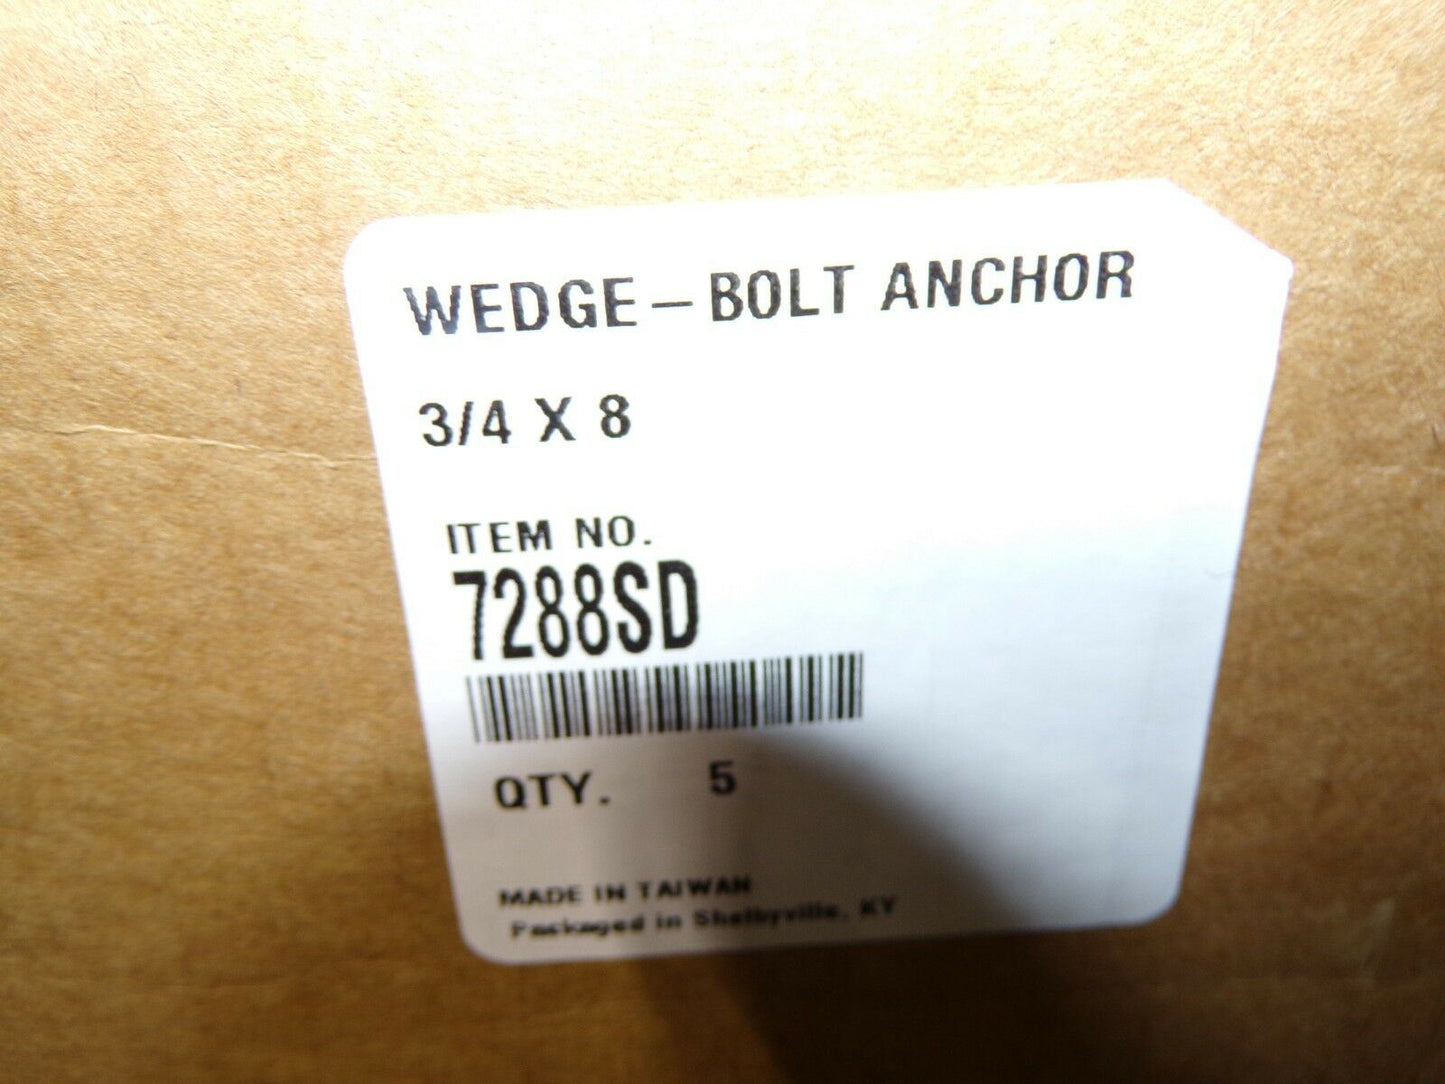 3/4" x 8" Wedge - Bolt Anchors QTY-5  7288SD (183377691951-Y34)